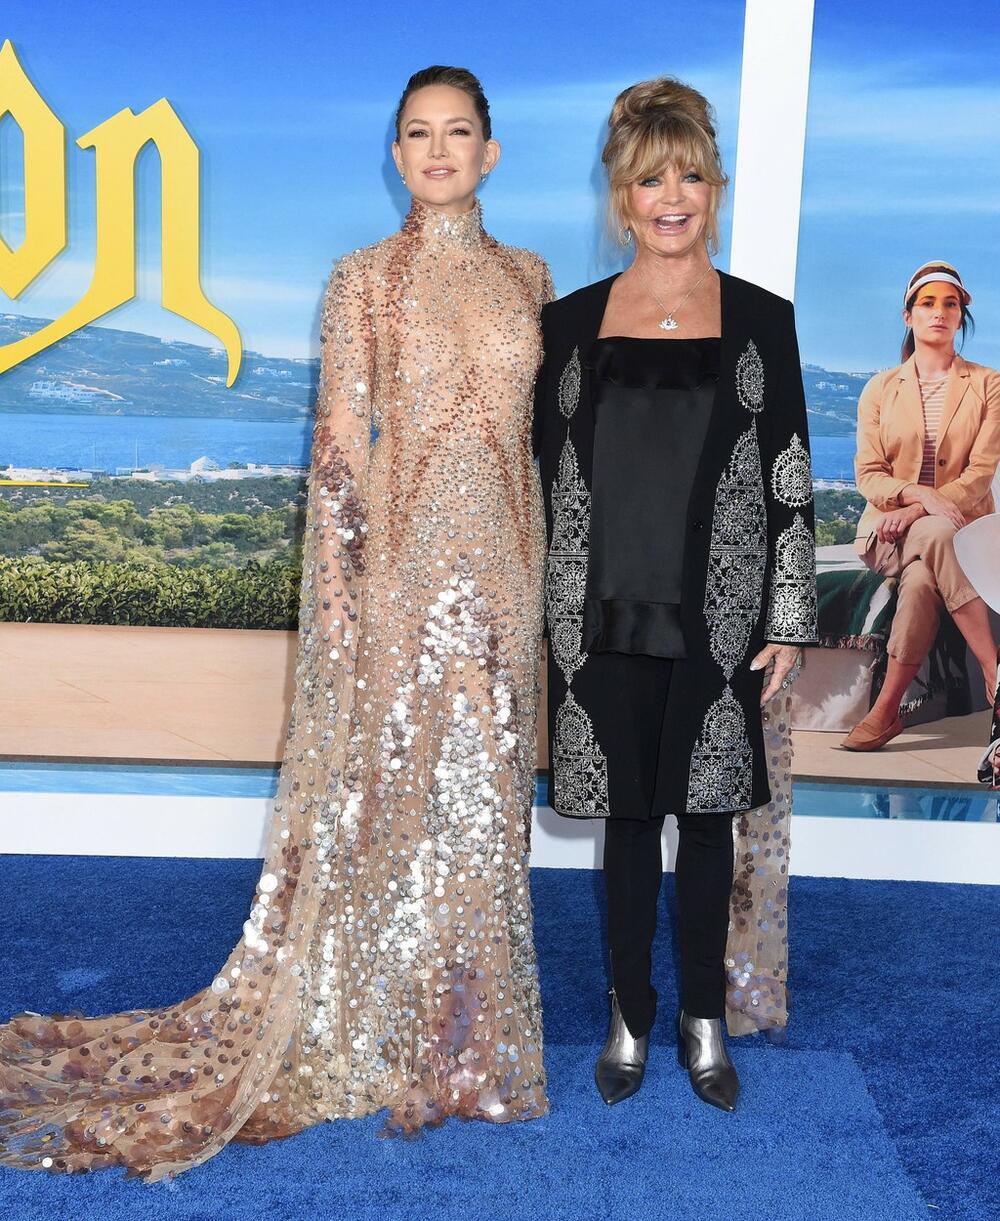 <p>Glumica Kejt Hadson i njena majka i holivudska zvezda Goldi Hon briljirale su sinoć na premijeri Kejtinog najnovijeg filma "<em>Glass onion: A Knives out Mystery"</em> u Los Anđelesu.</p>